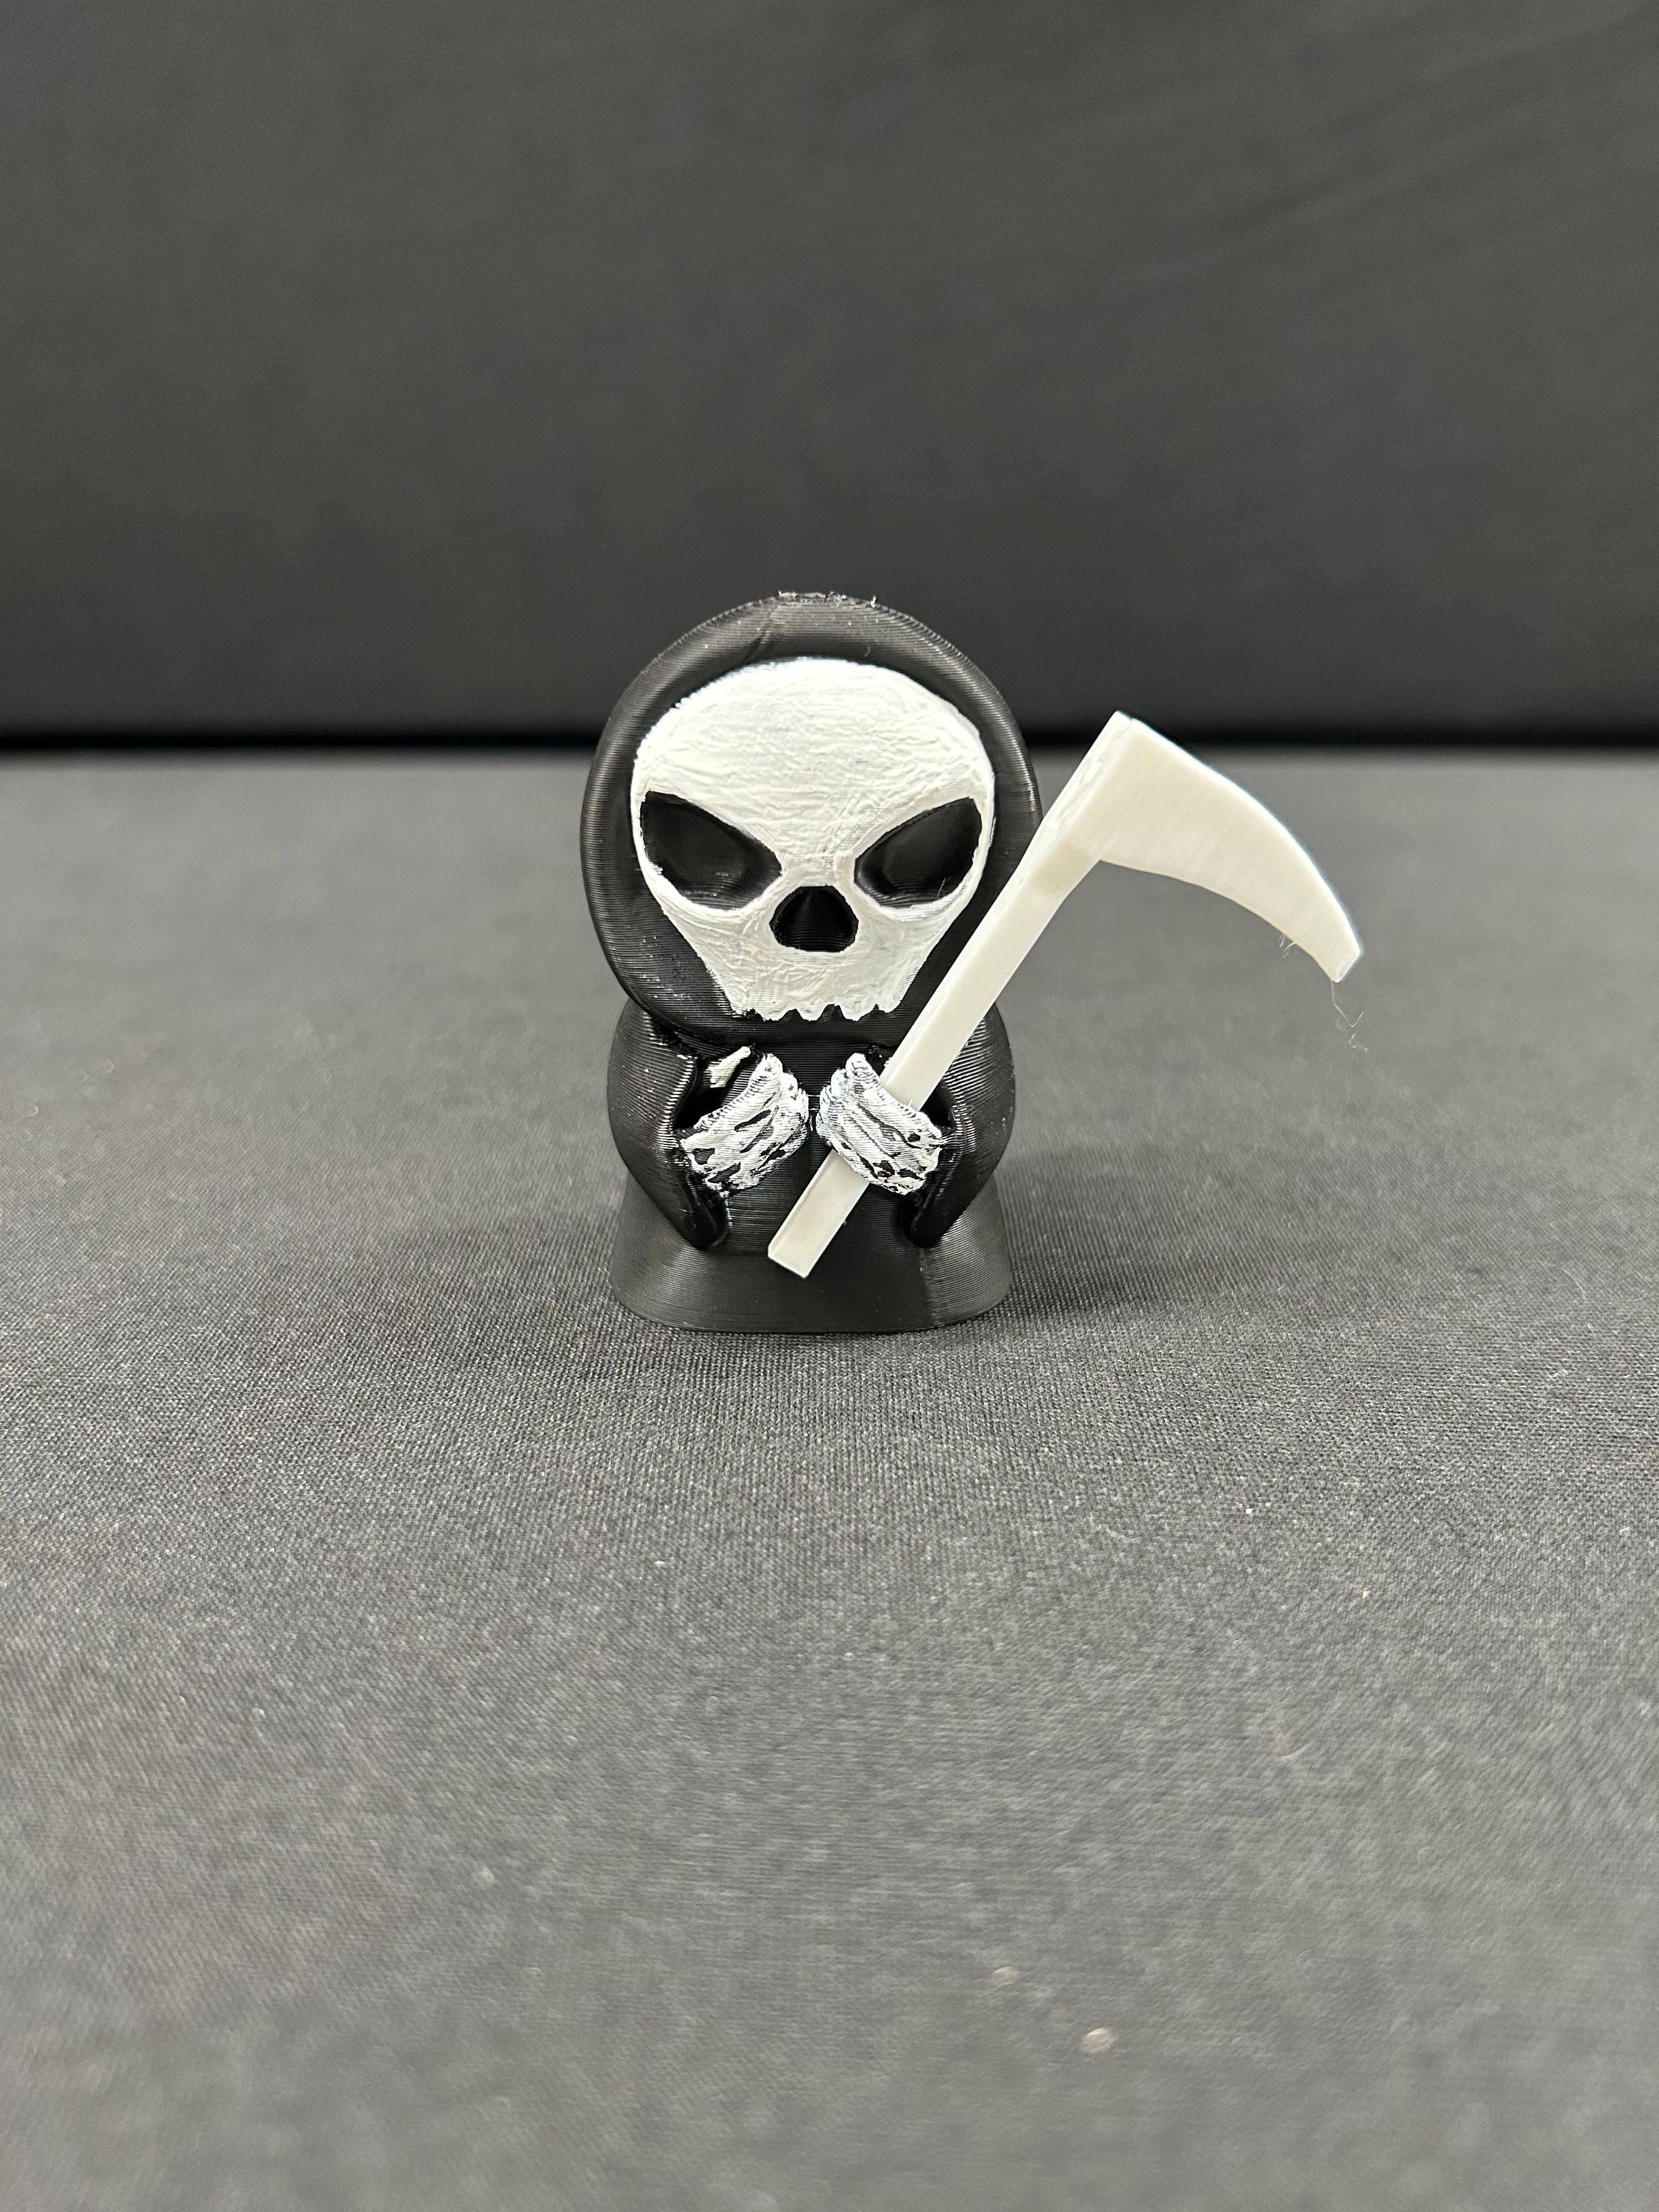 Grim Reaper Note Holder 2 3d model